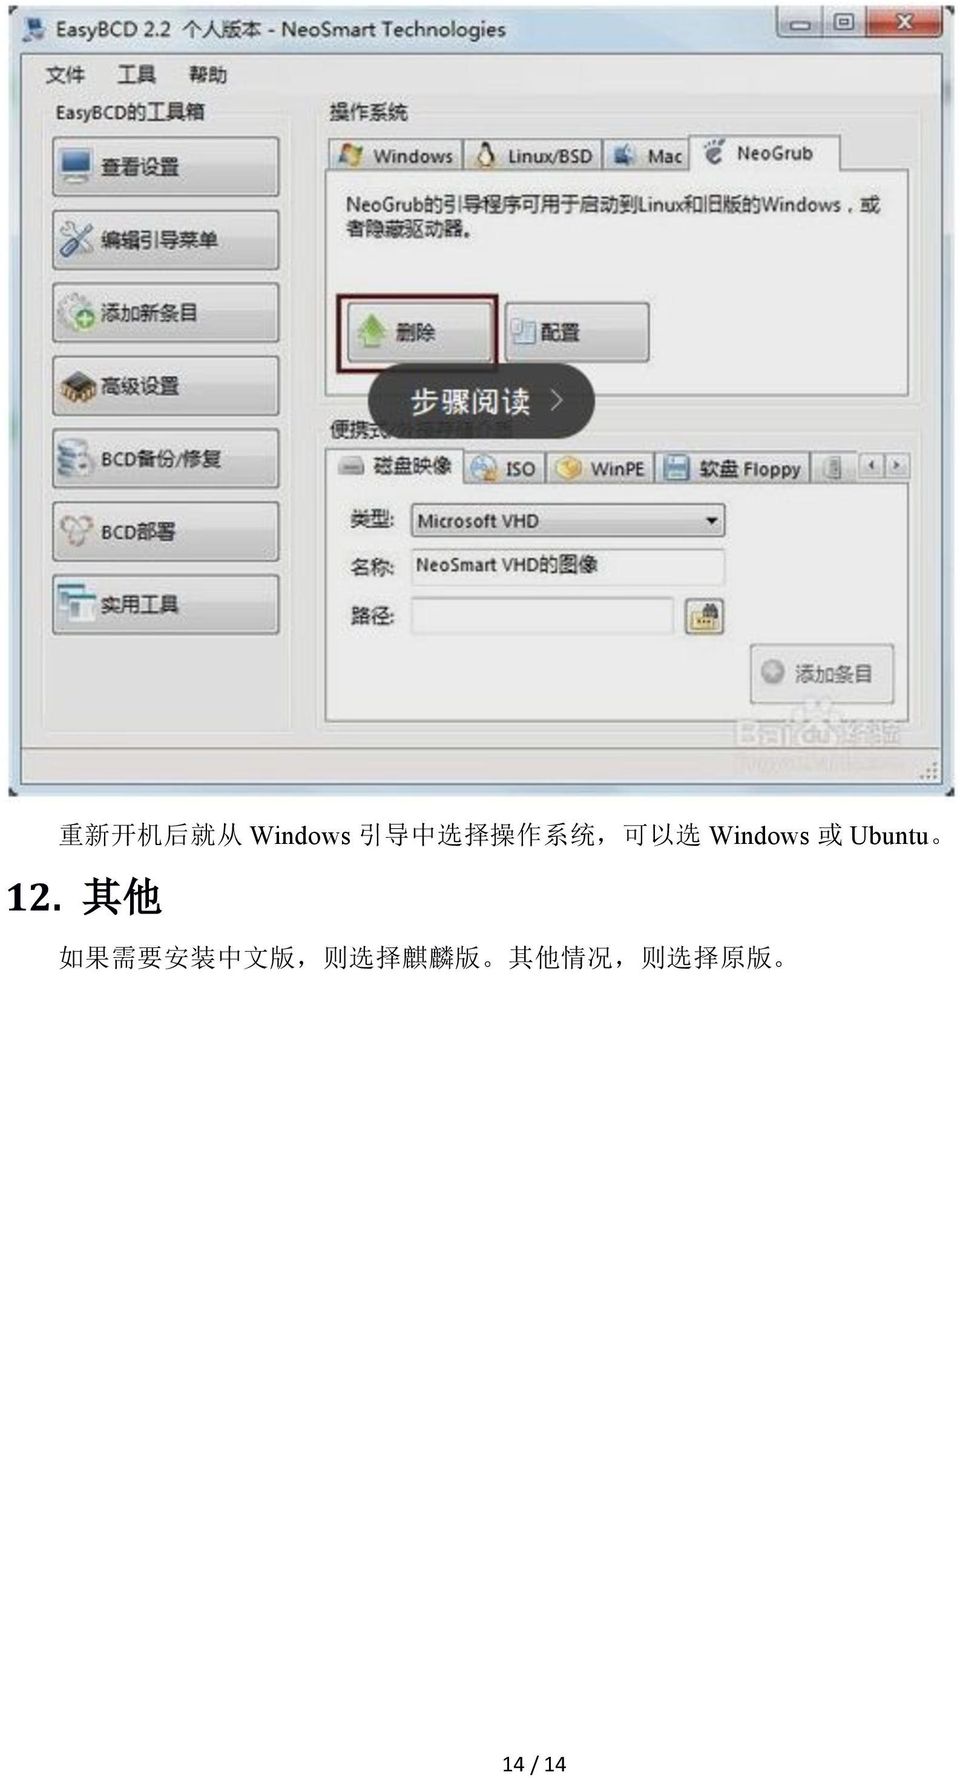 12. 其 他 如 果 需 要 安 装 中 文 版, 则 选 择